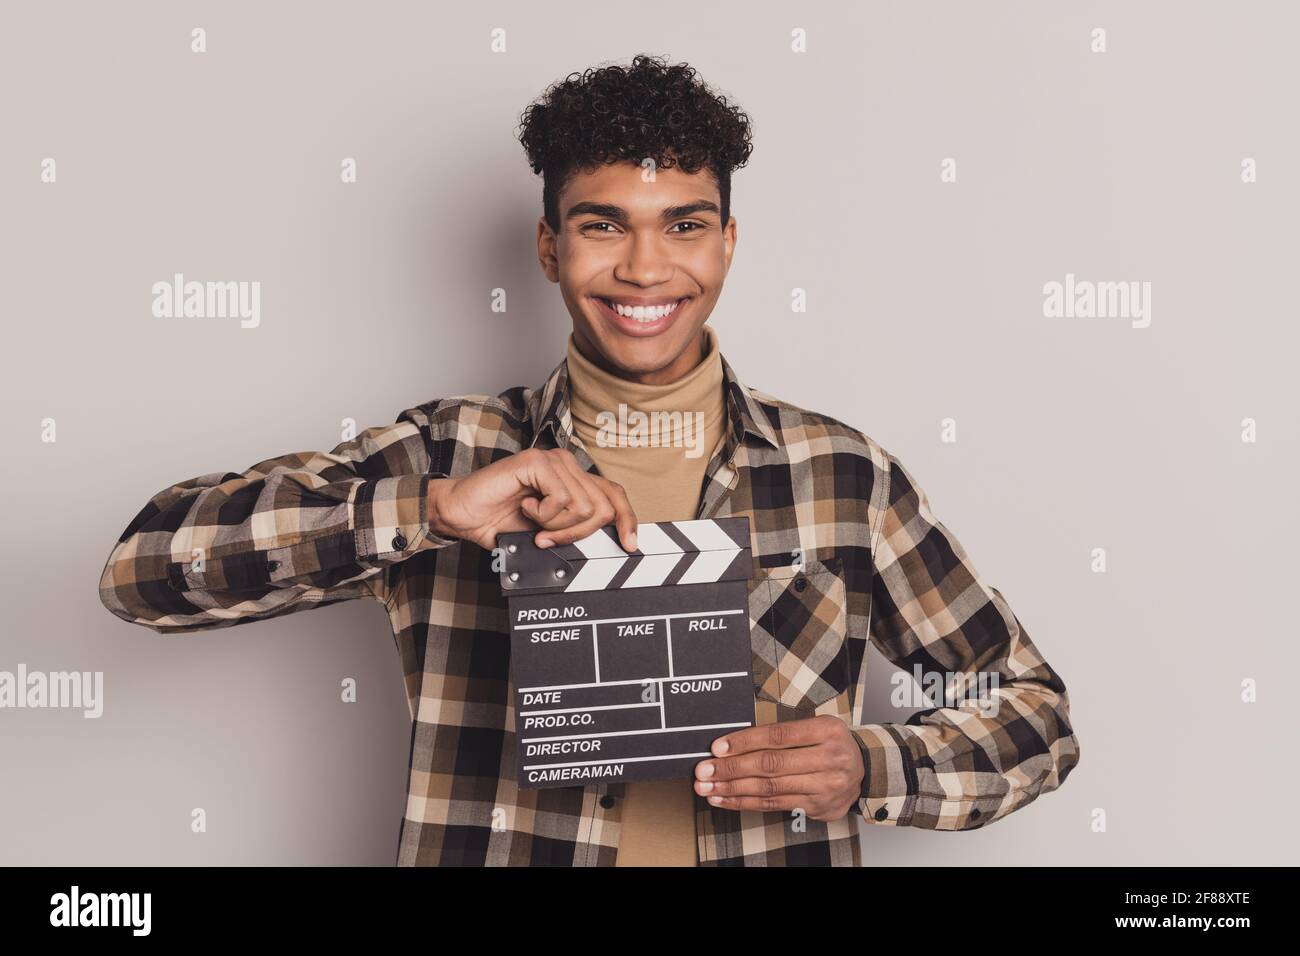 Photo portrait d'un homme qui garde le plateau de casting souriant faisant du film film en chemise à carreaux isolée sur fond gris Banque D'Images